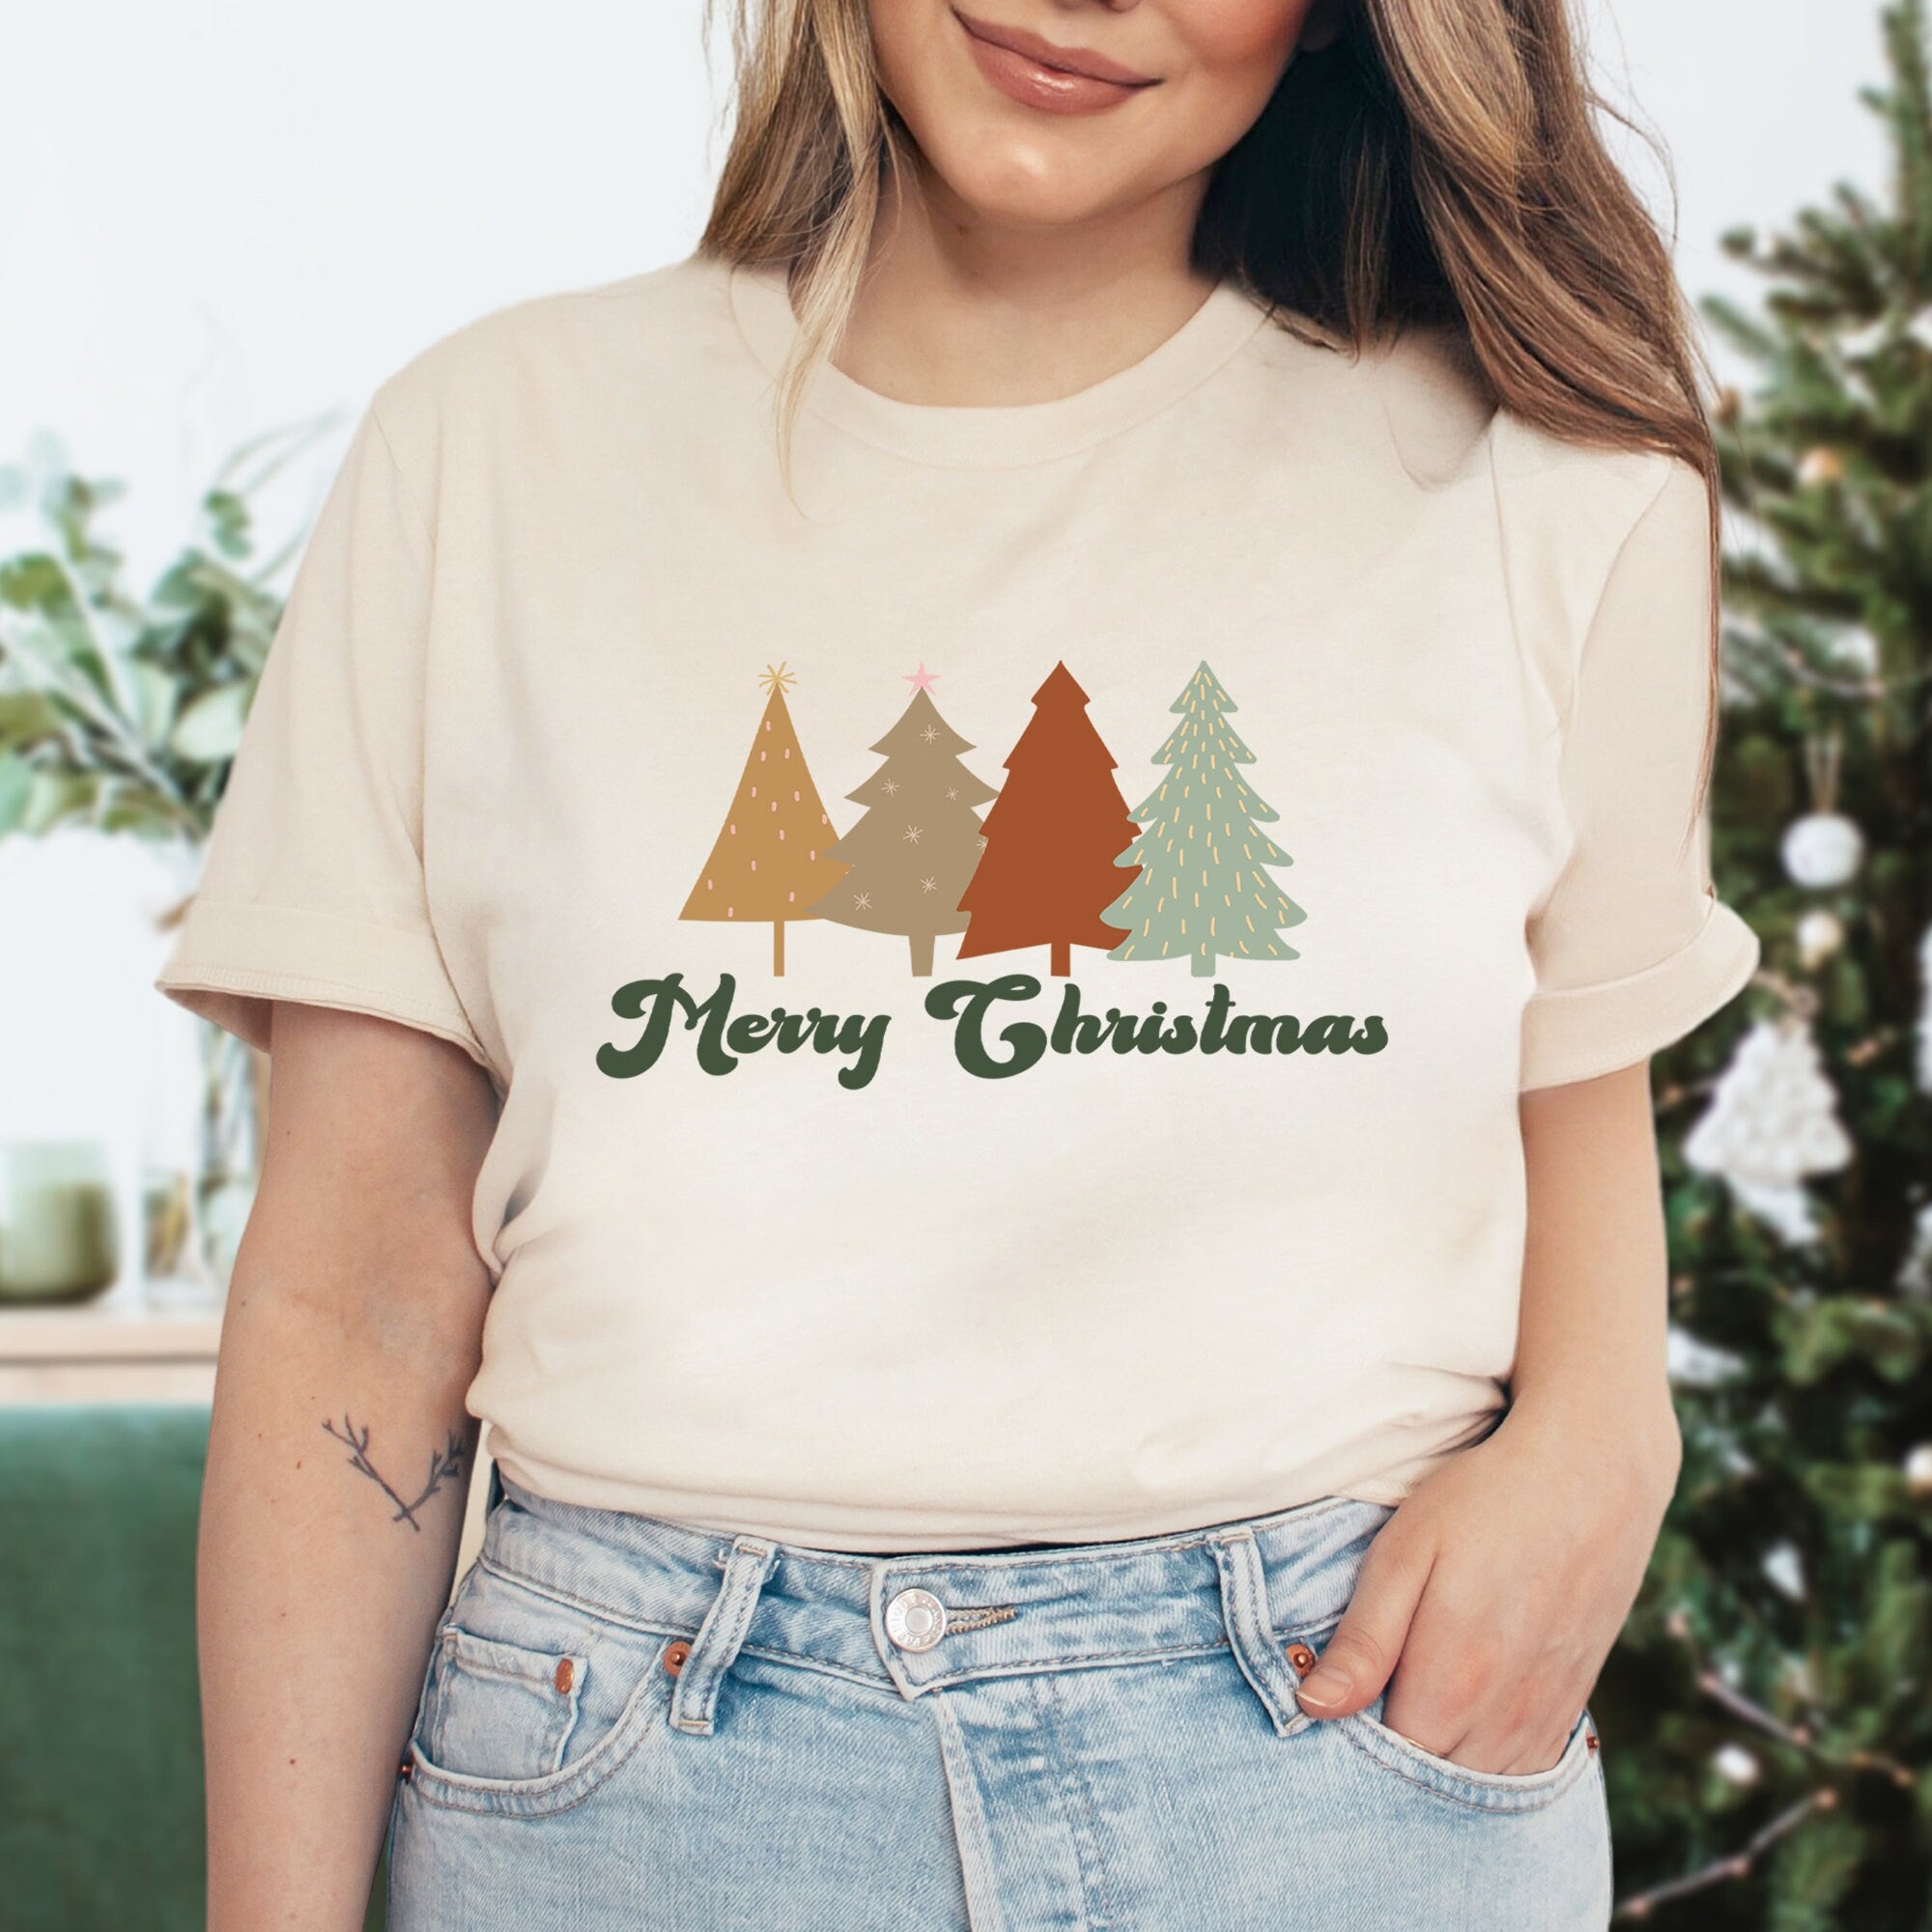 Merry Christmas Sweatshirt, Christmas Shirt, Christmas Shirts For Women, Christmas Gifts, Christmas Sweatshirts